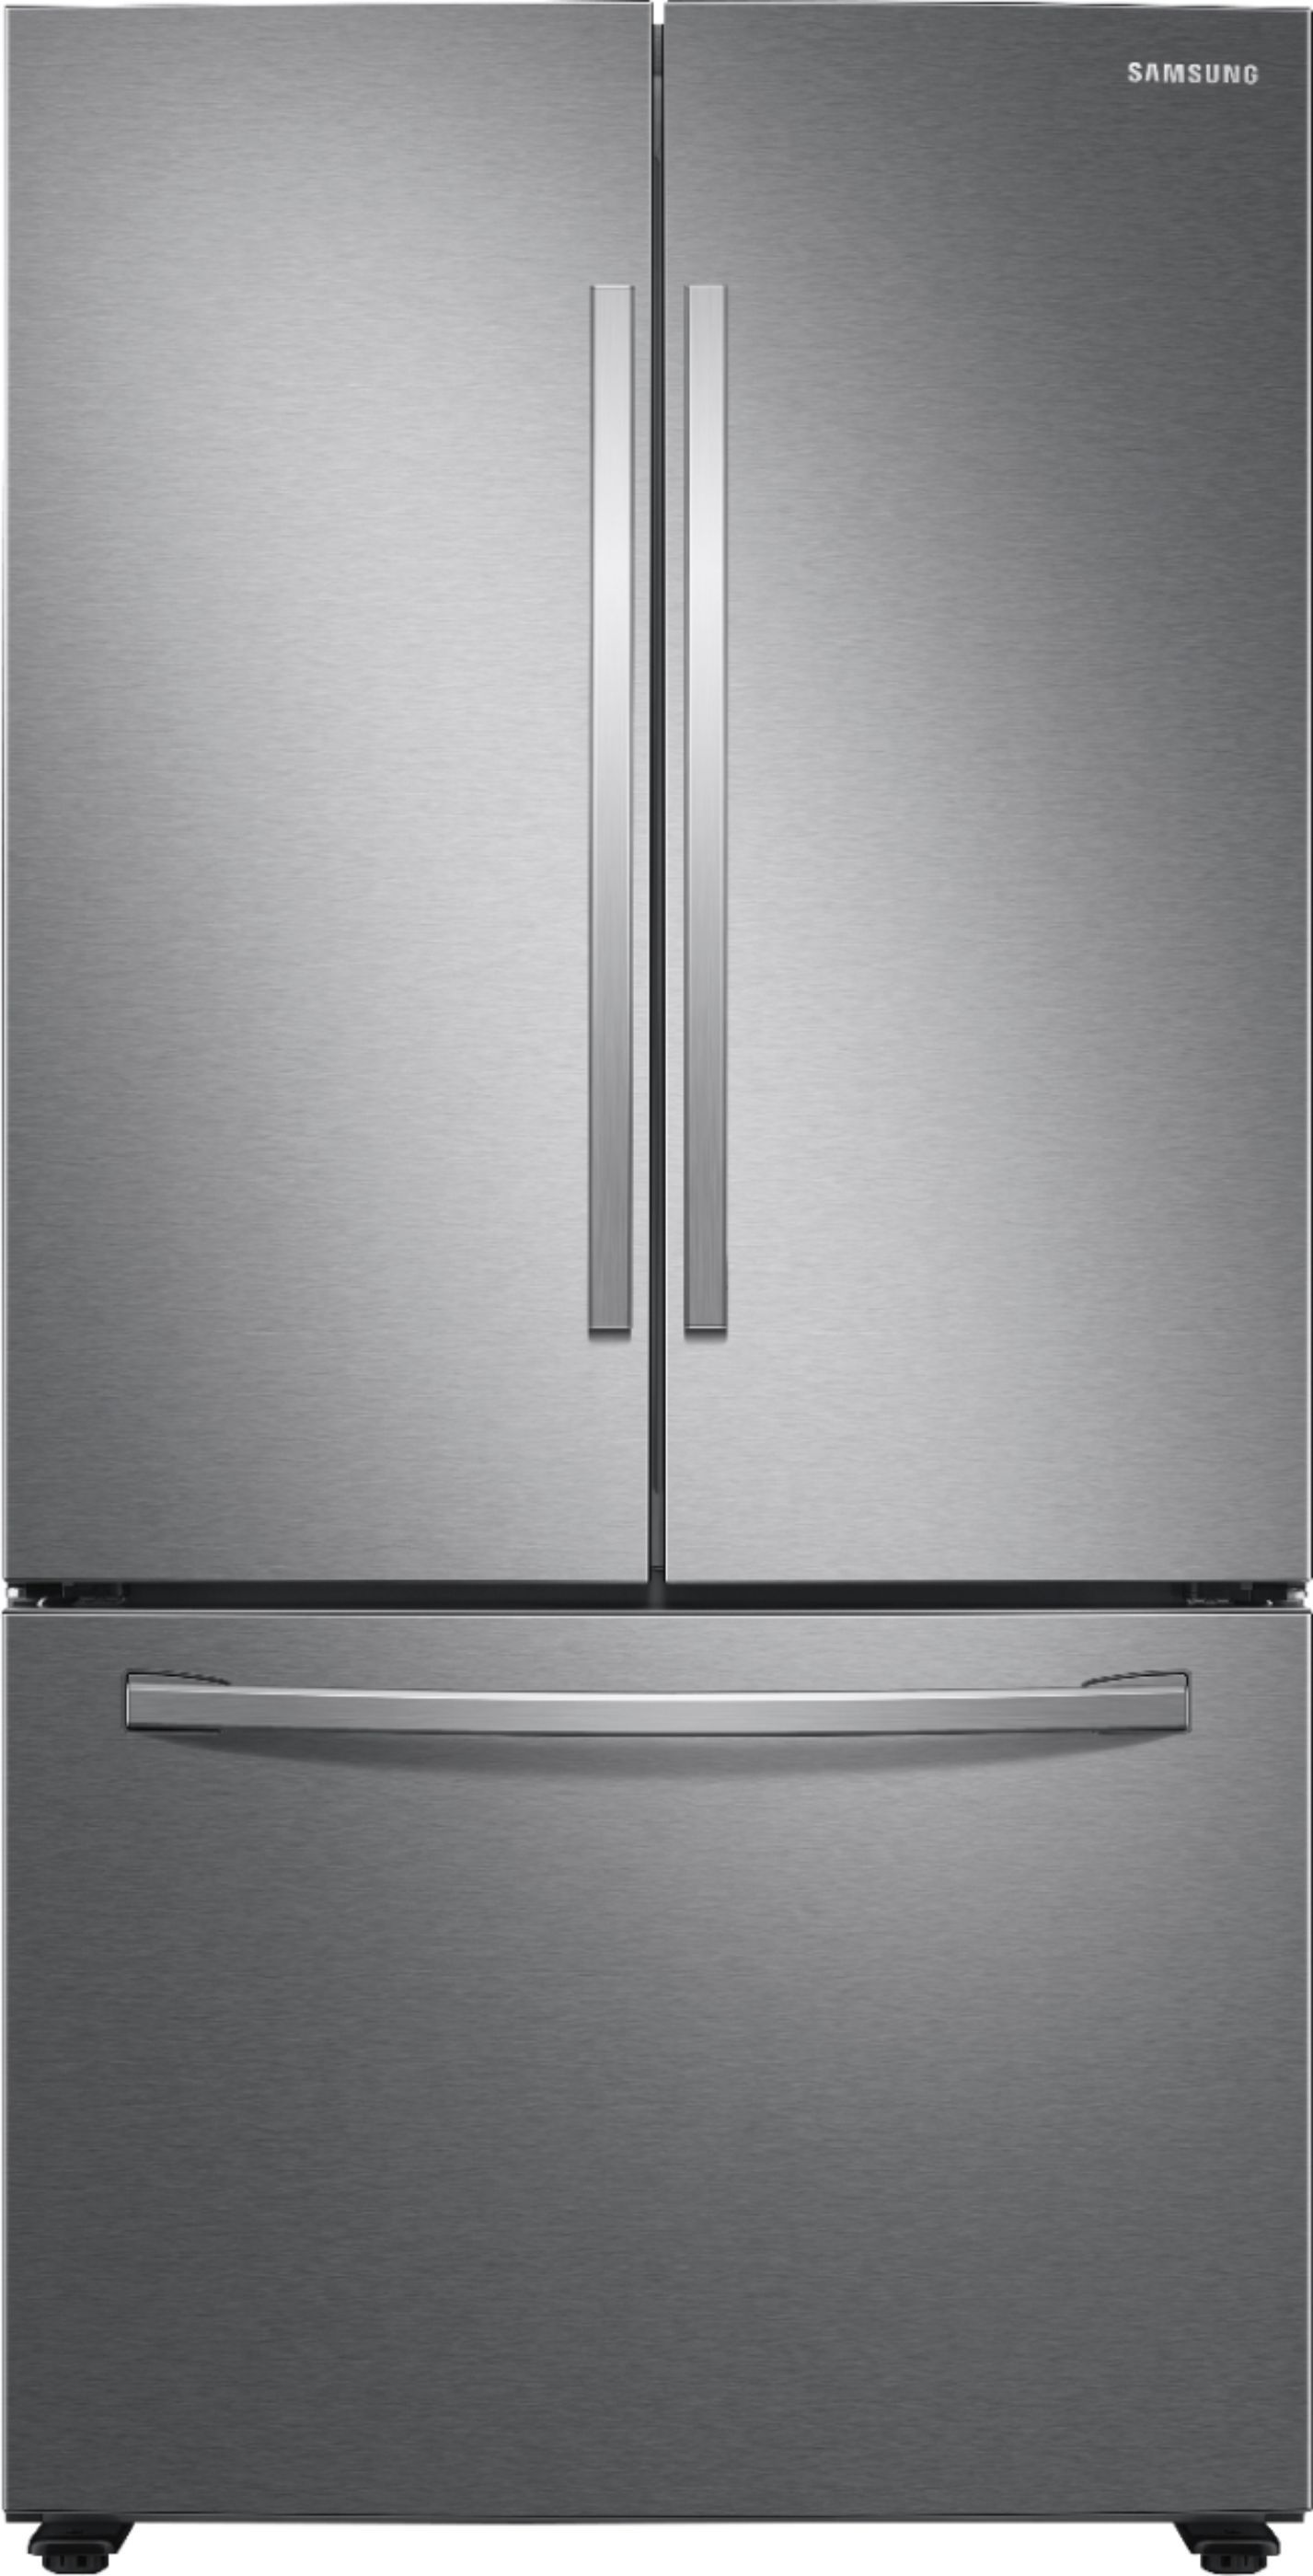 Samsung 28 cu. ft. 3-Door French Door Refrigerator with Large Capacity Stainless Steel RF28T5001S... | Best Buy U.S.